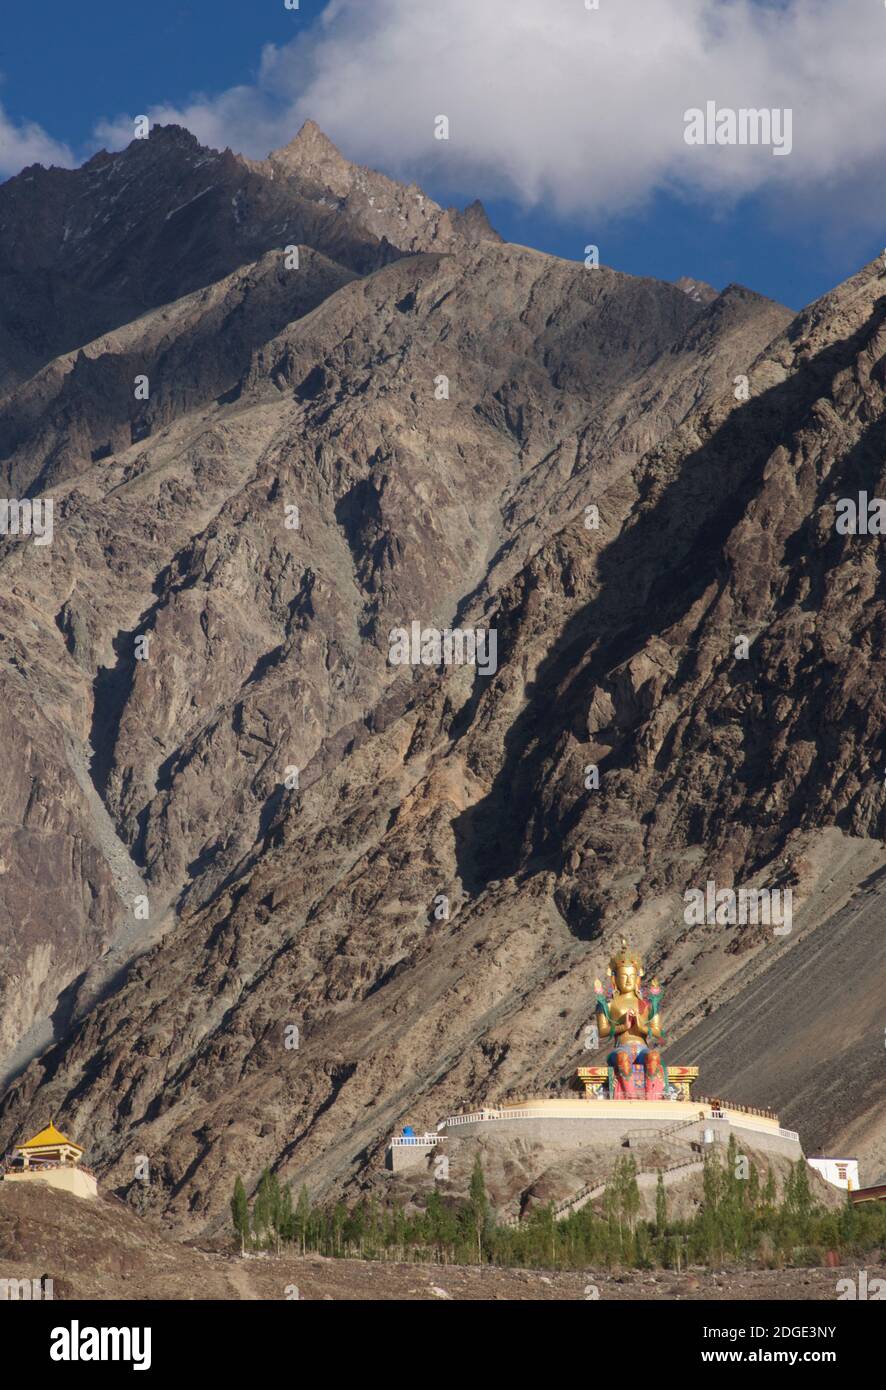 La grande statue de bouddha en face du monastère de Deskit. Le monastère est le plus ancien et le plus grand de la vallée de Nubra. Il appartient à la secte Gelugpa du bouddhisme tibétain. Ladakh, Jammu-et-Cachemire, Inde Banque D'Images